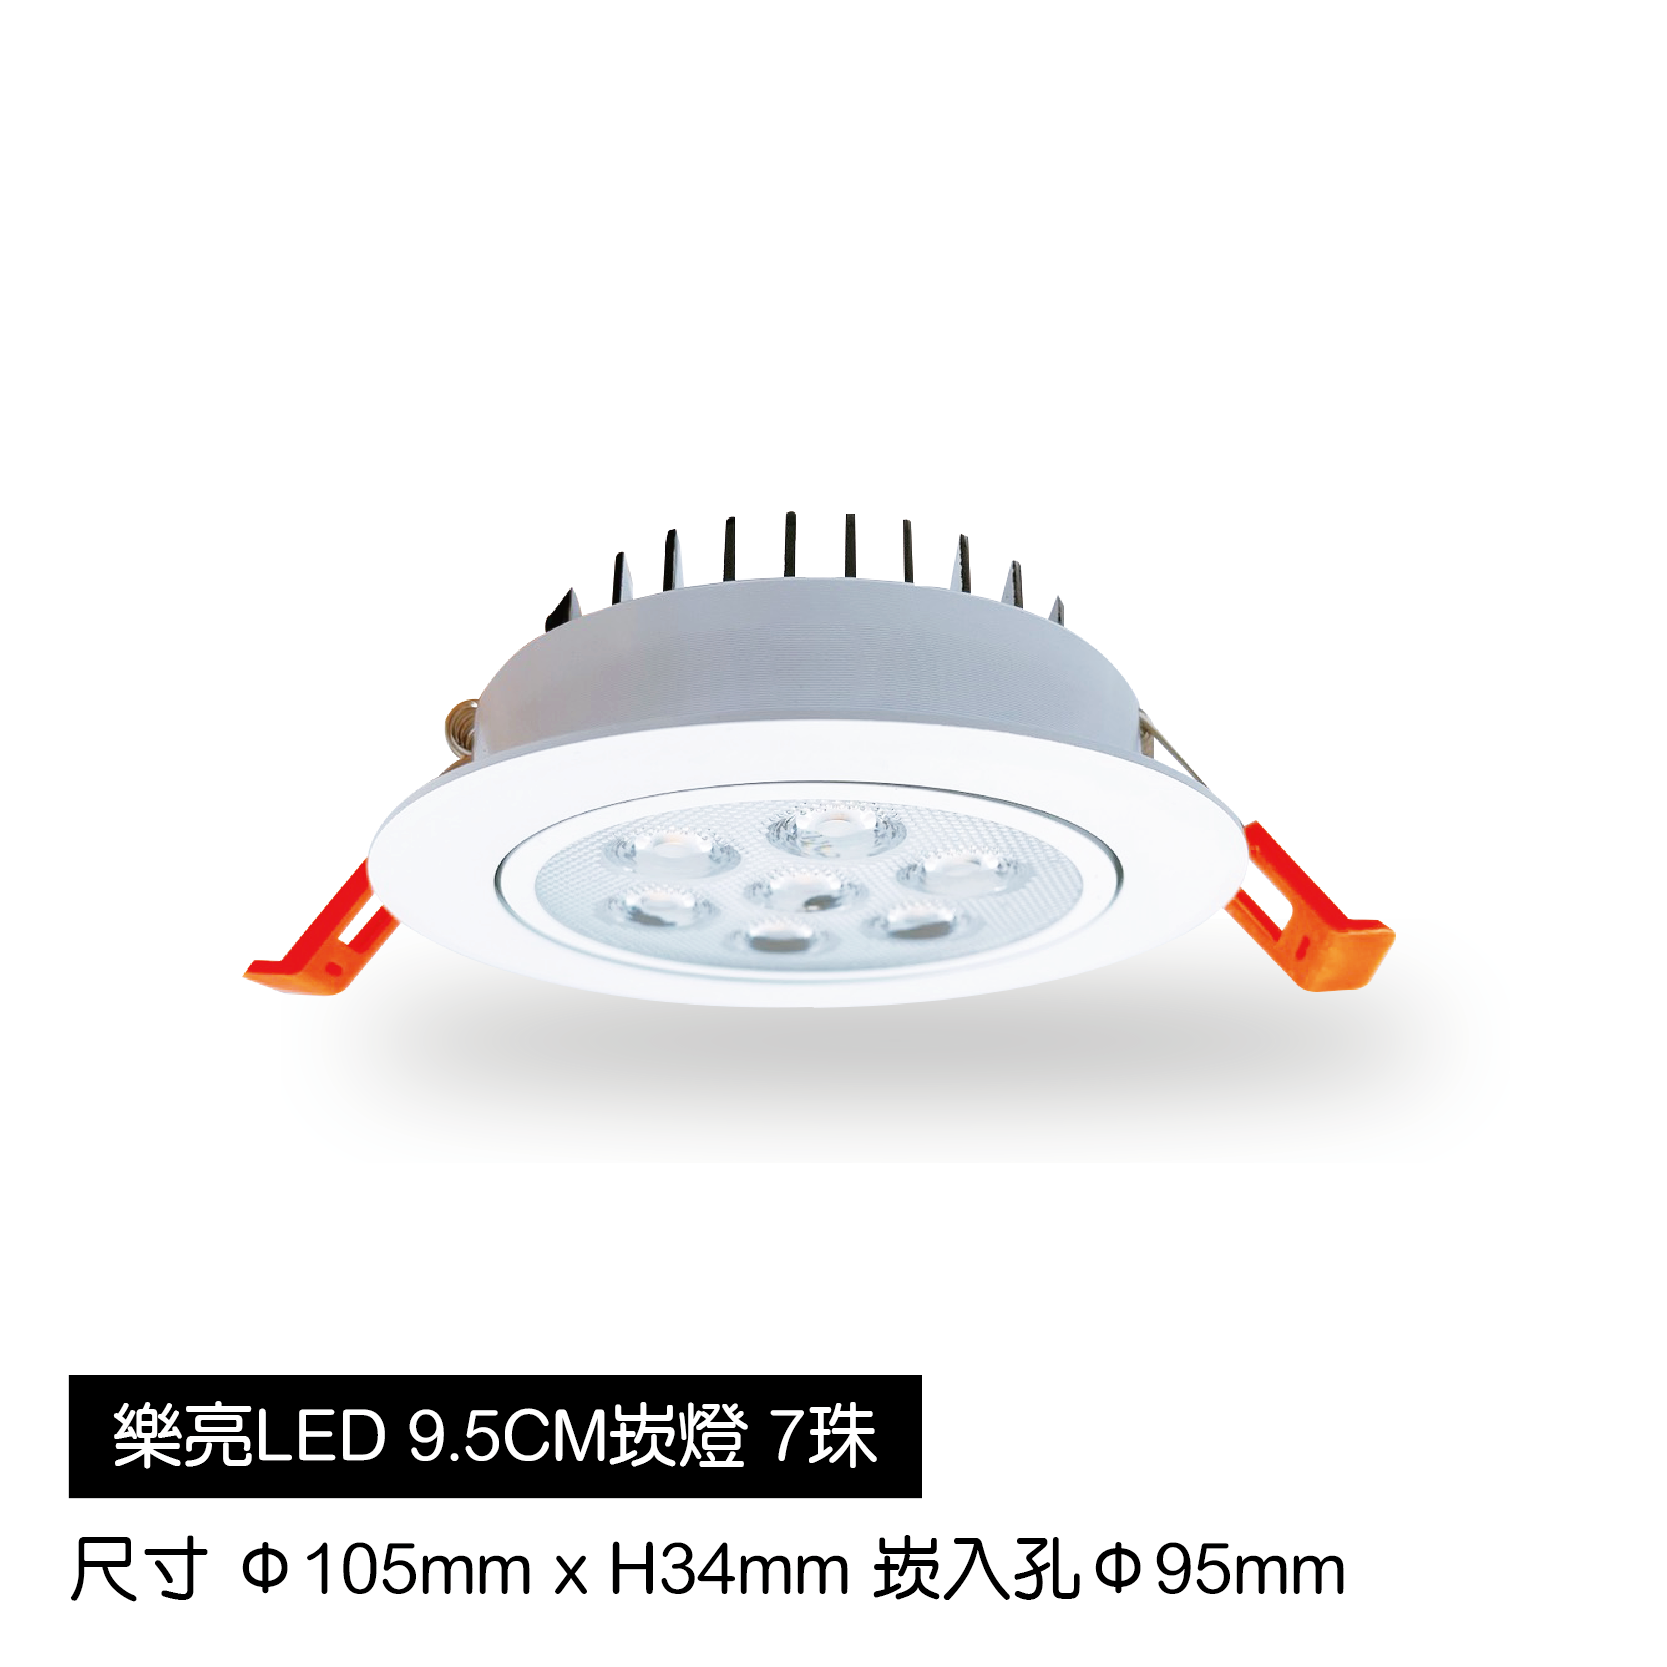 LED蜂巢9.5cm崁燈-7珠-白殼